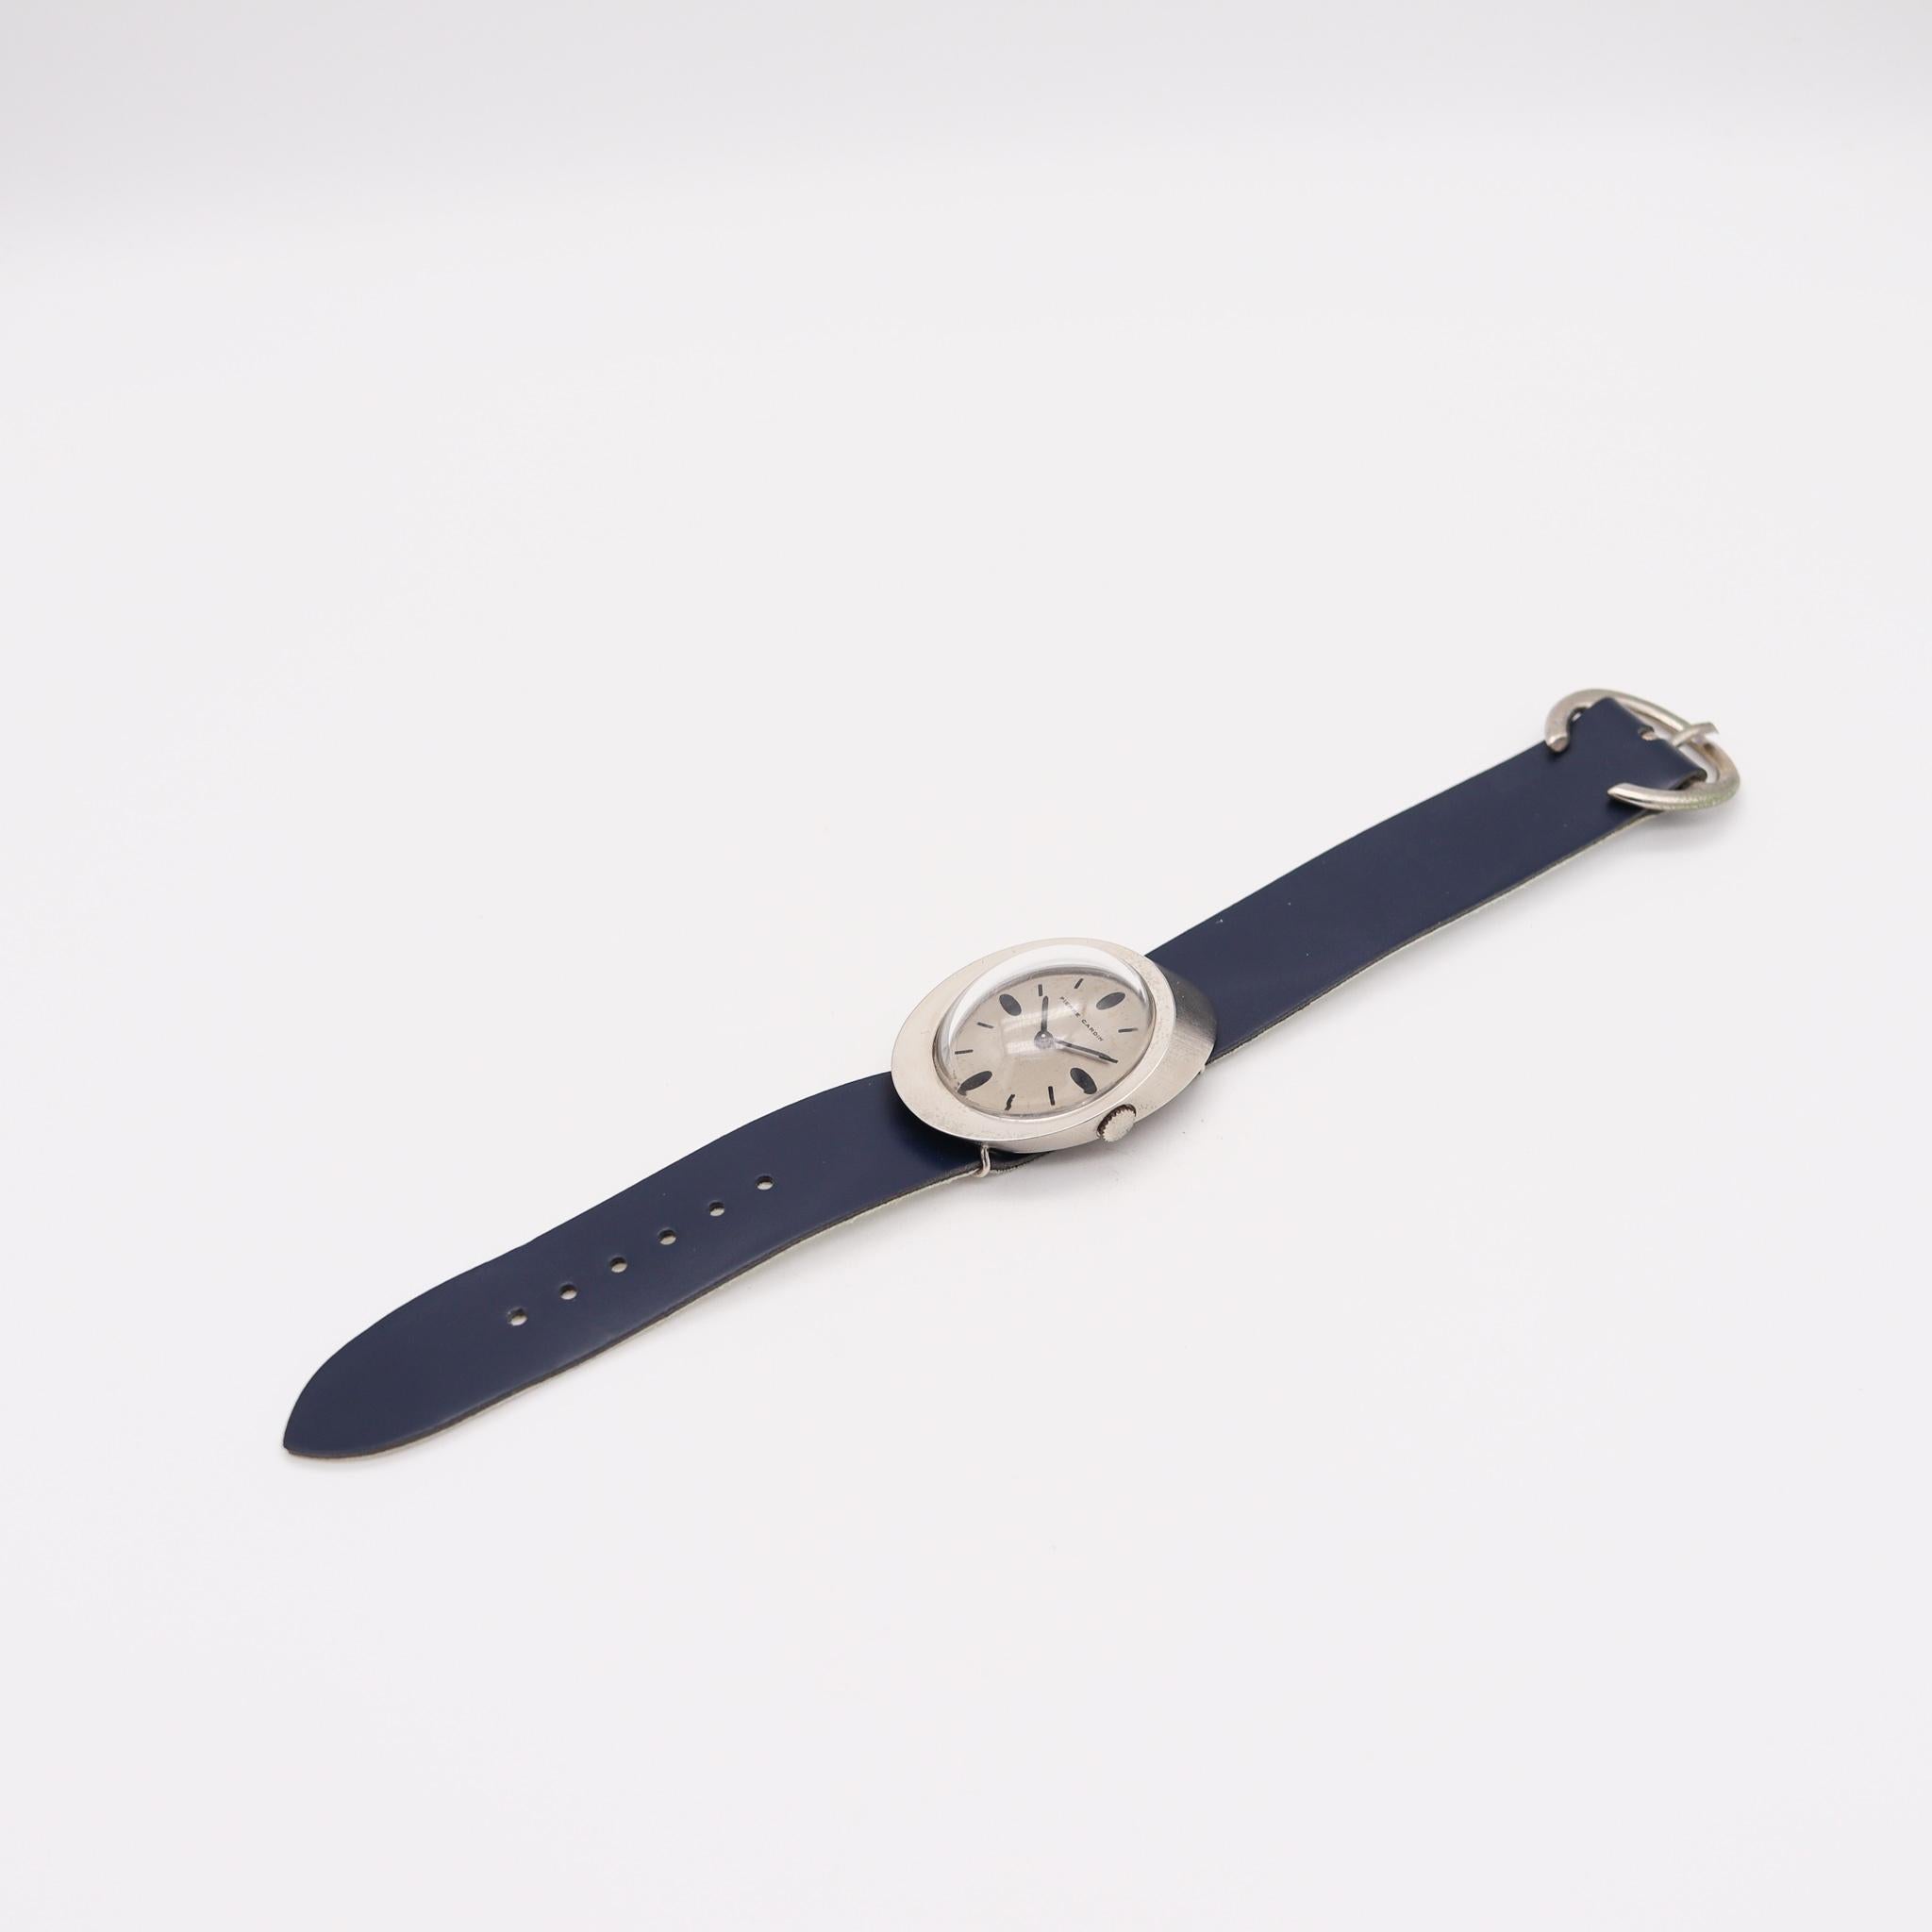 Montre-bracelet Jaeger-LeCoultre PC107 conçue par Pierre Cardin.

Fabuleuse montre-bracelet rétro, conçue en France par le couturier parisien Pierre Cardin, en 1971. Cette belle et rare montre est le modèle Pierre Cardin PC107, et a été conçue avec